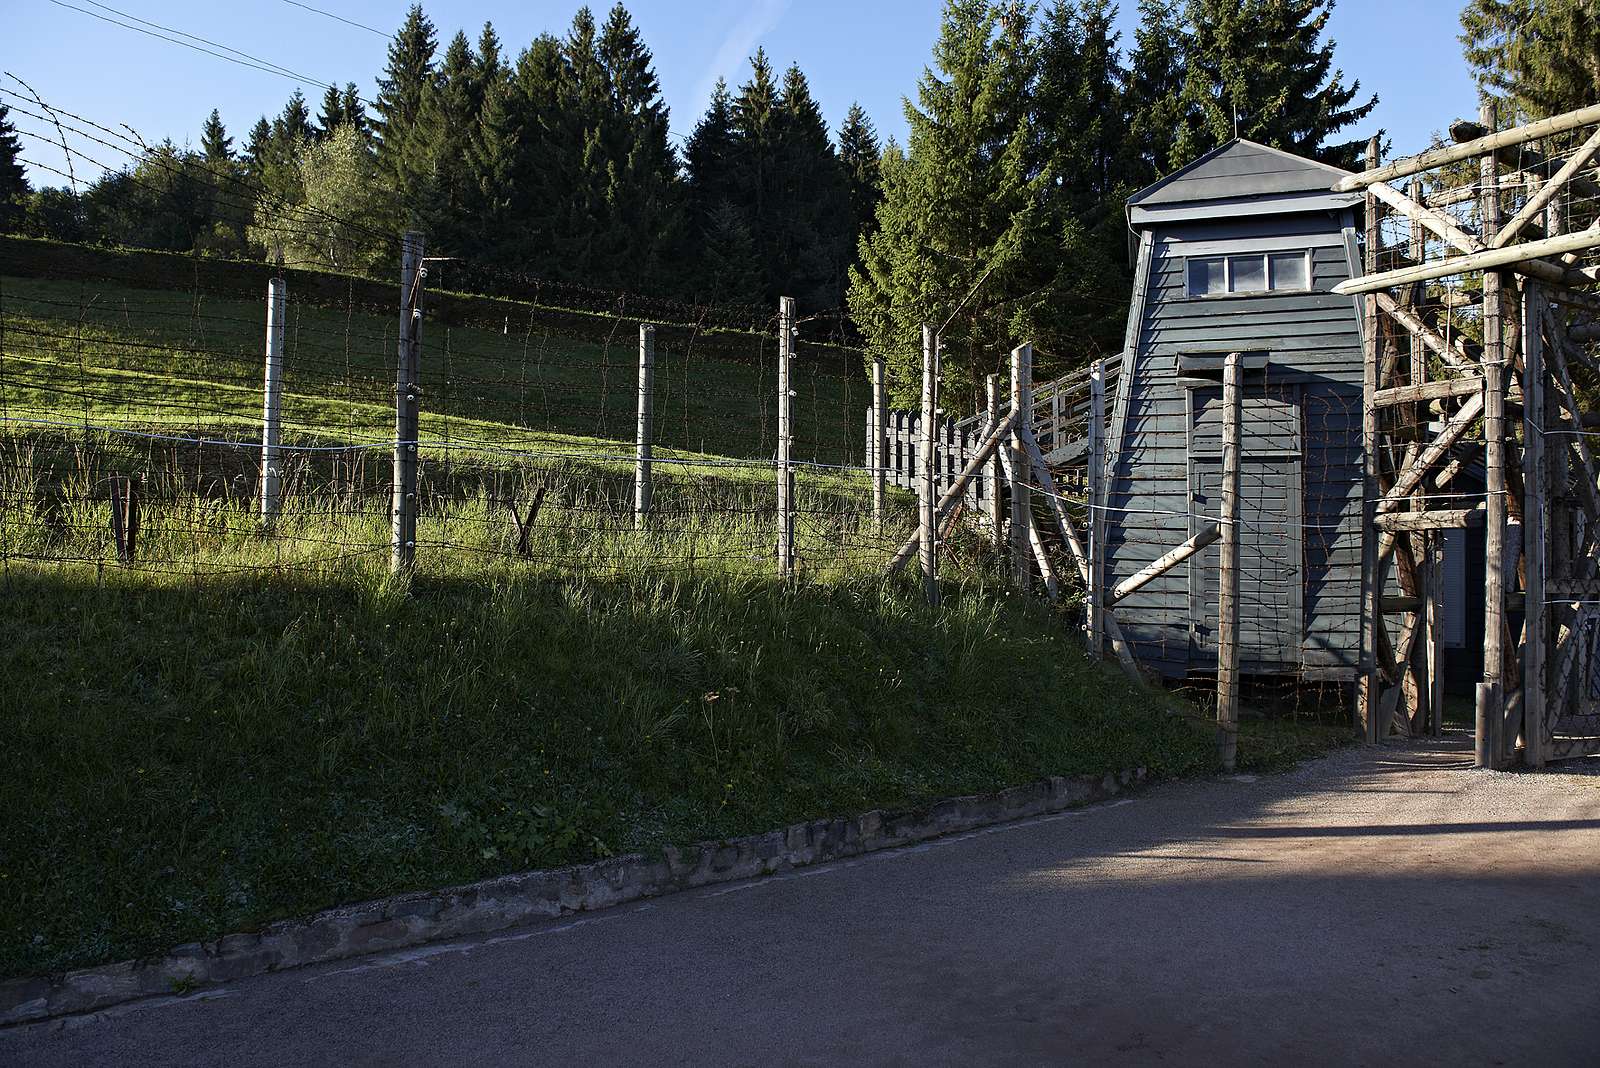 Le site de l'ancien camp de concentration du Struthof